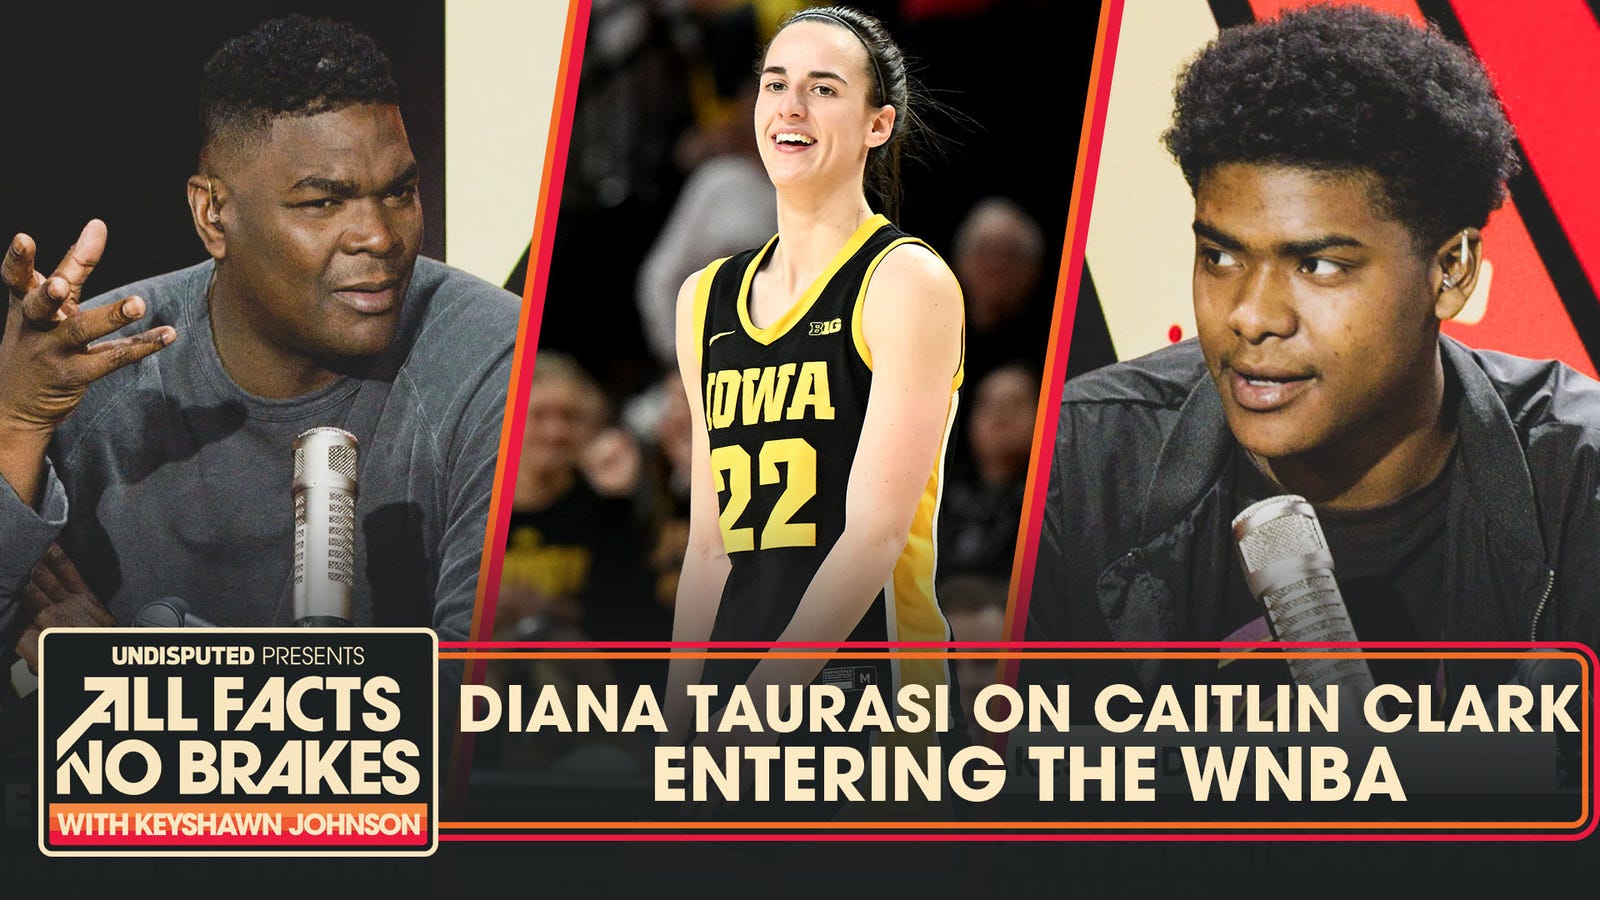 Diana Taurasi warns Caitlin Clark "reality is coming" ahead of WNBA Draft 